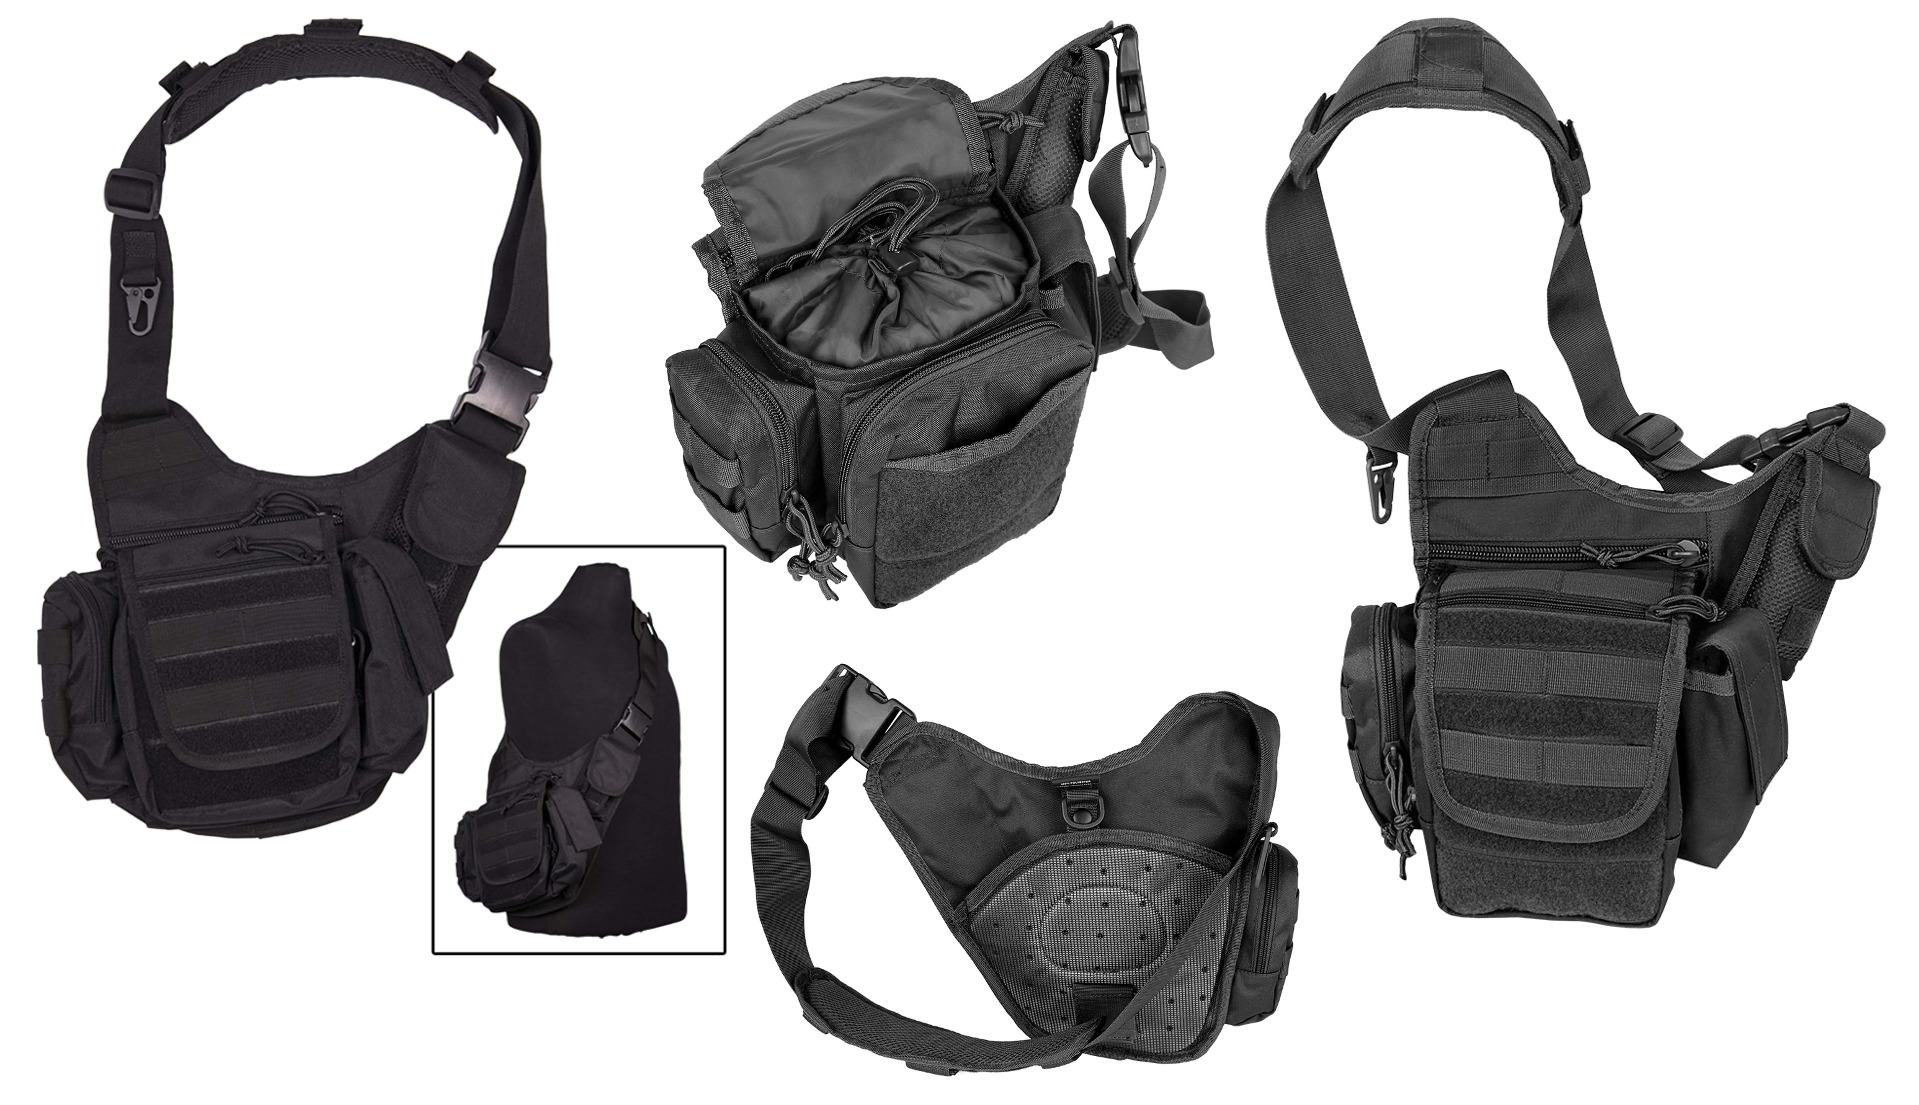 Poiščite popolno EDC bočno večnamensko torbo črne barve na Opremljen.si. Trajna, vodoodporna in prilagodljiva za pohodnike, fotografe in pripadnike varnostnih služb. Nakupujte zdaj!